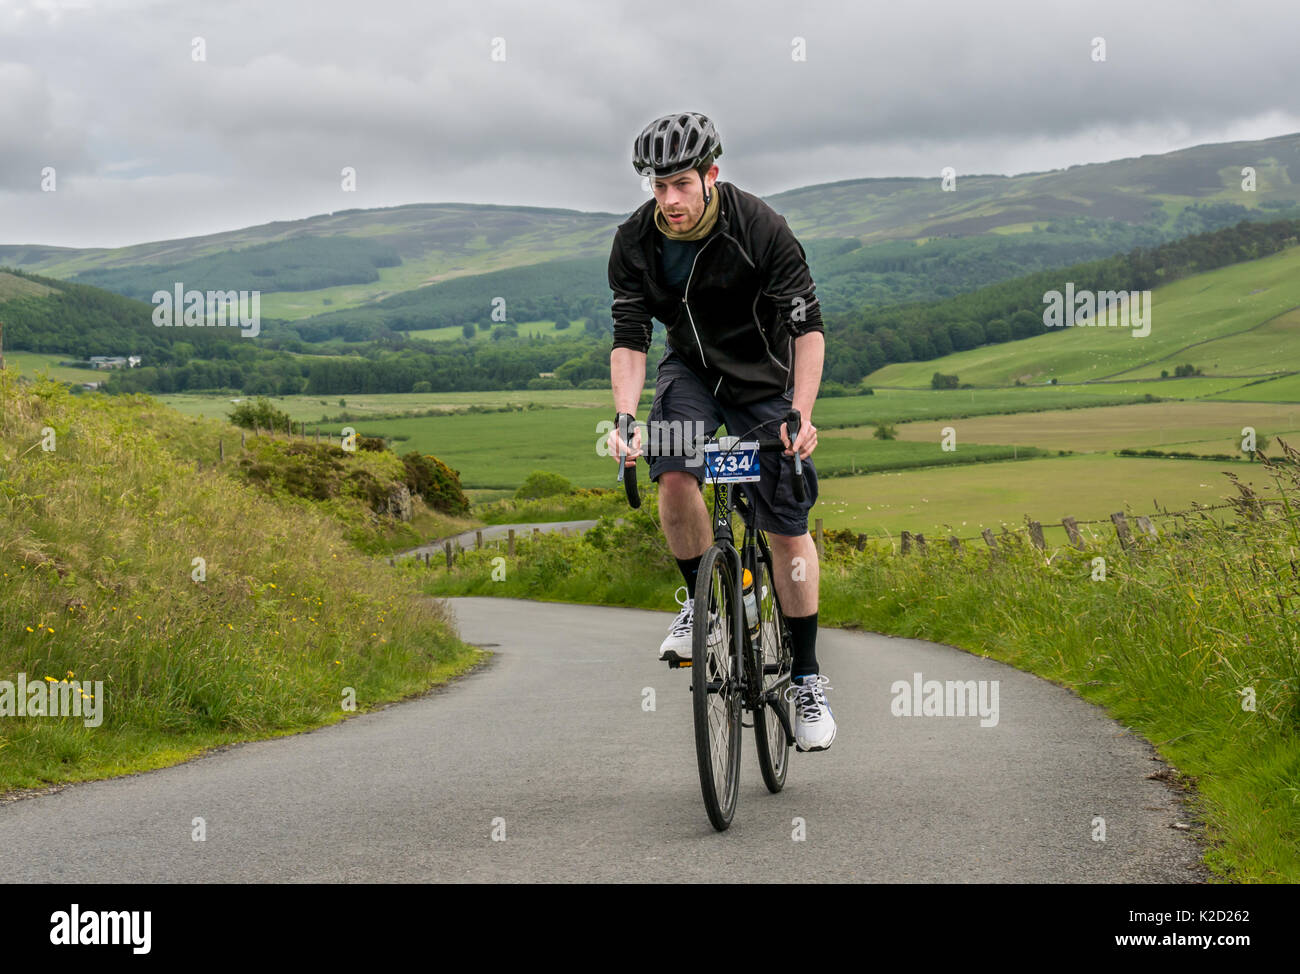 Jeune homme sur le vélo Le vélo jusqu'Dreva Hill, Cycle Droit Brésil Skinny Tweed 2017 cyclosportive, Peebles, Scottish Borders, Scotland, UK Banque D'Images